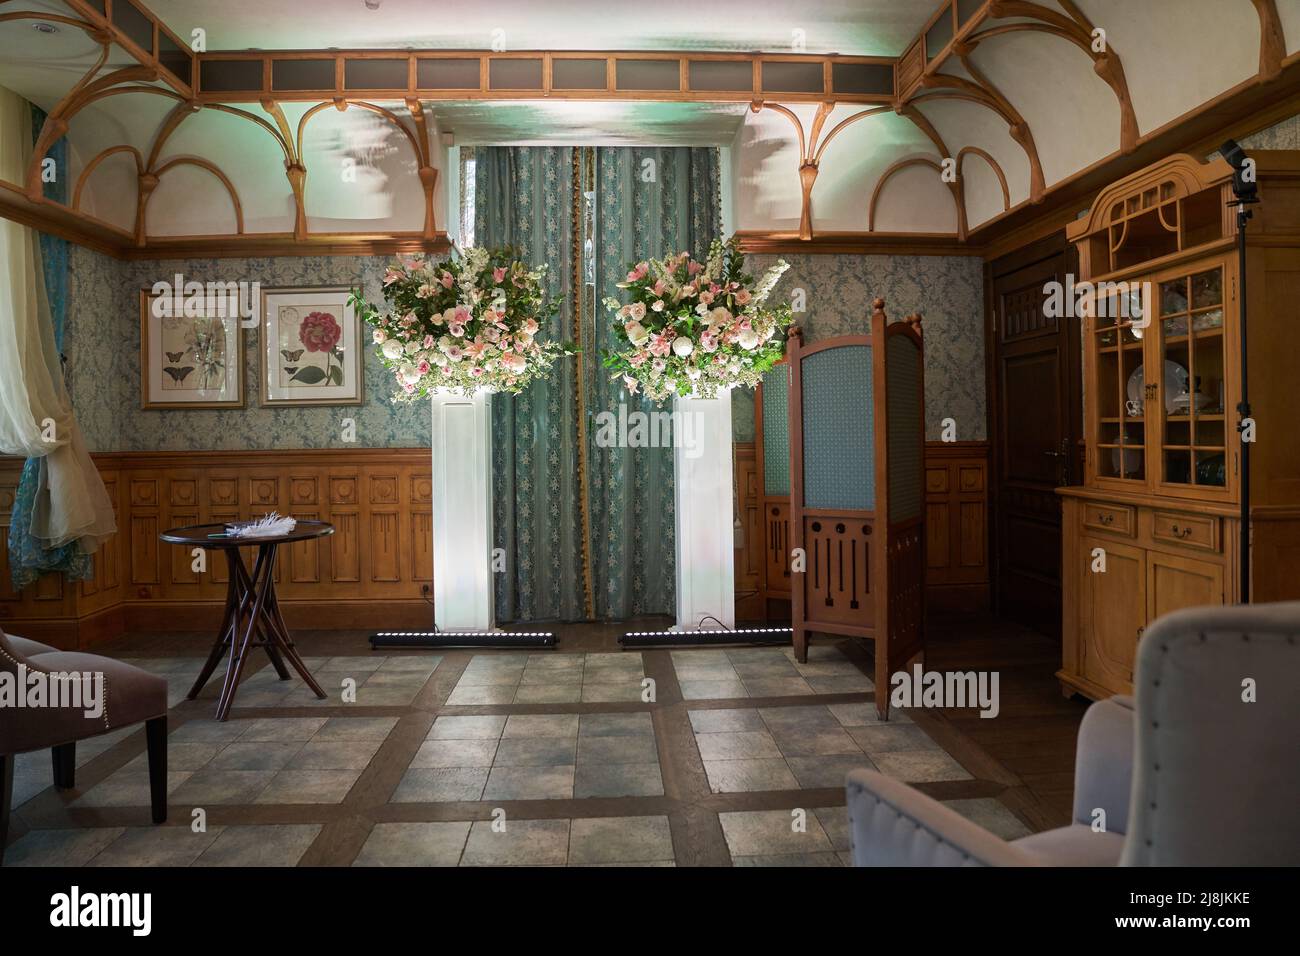 Schöner Vintage-Saal für eine Hochzeitszeremonie.Elegantes Interieur-Design mit Blumen im Vintage-Stil. Hochwertige Fotos Stockfoto